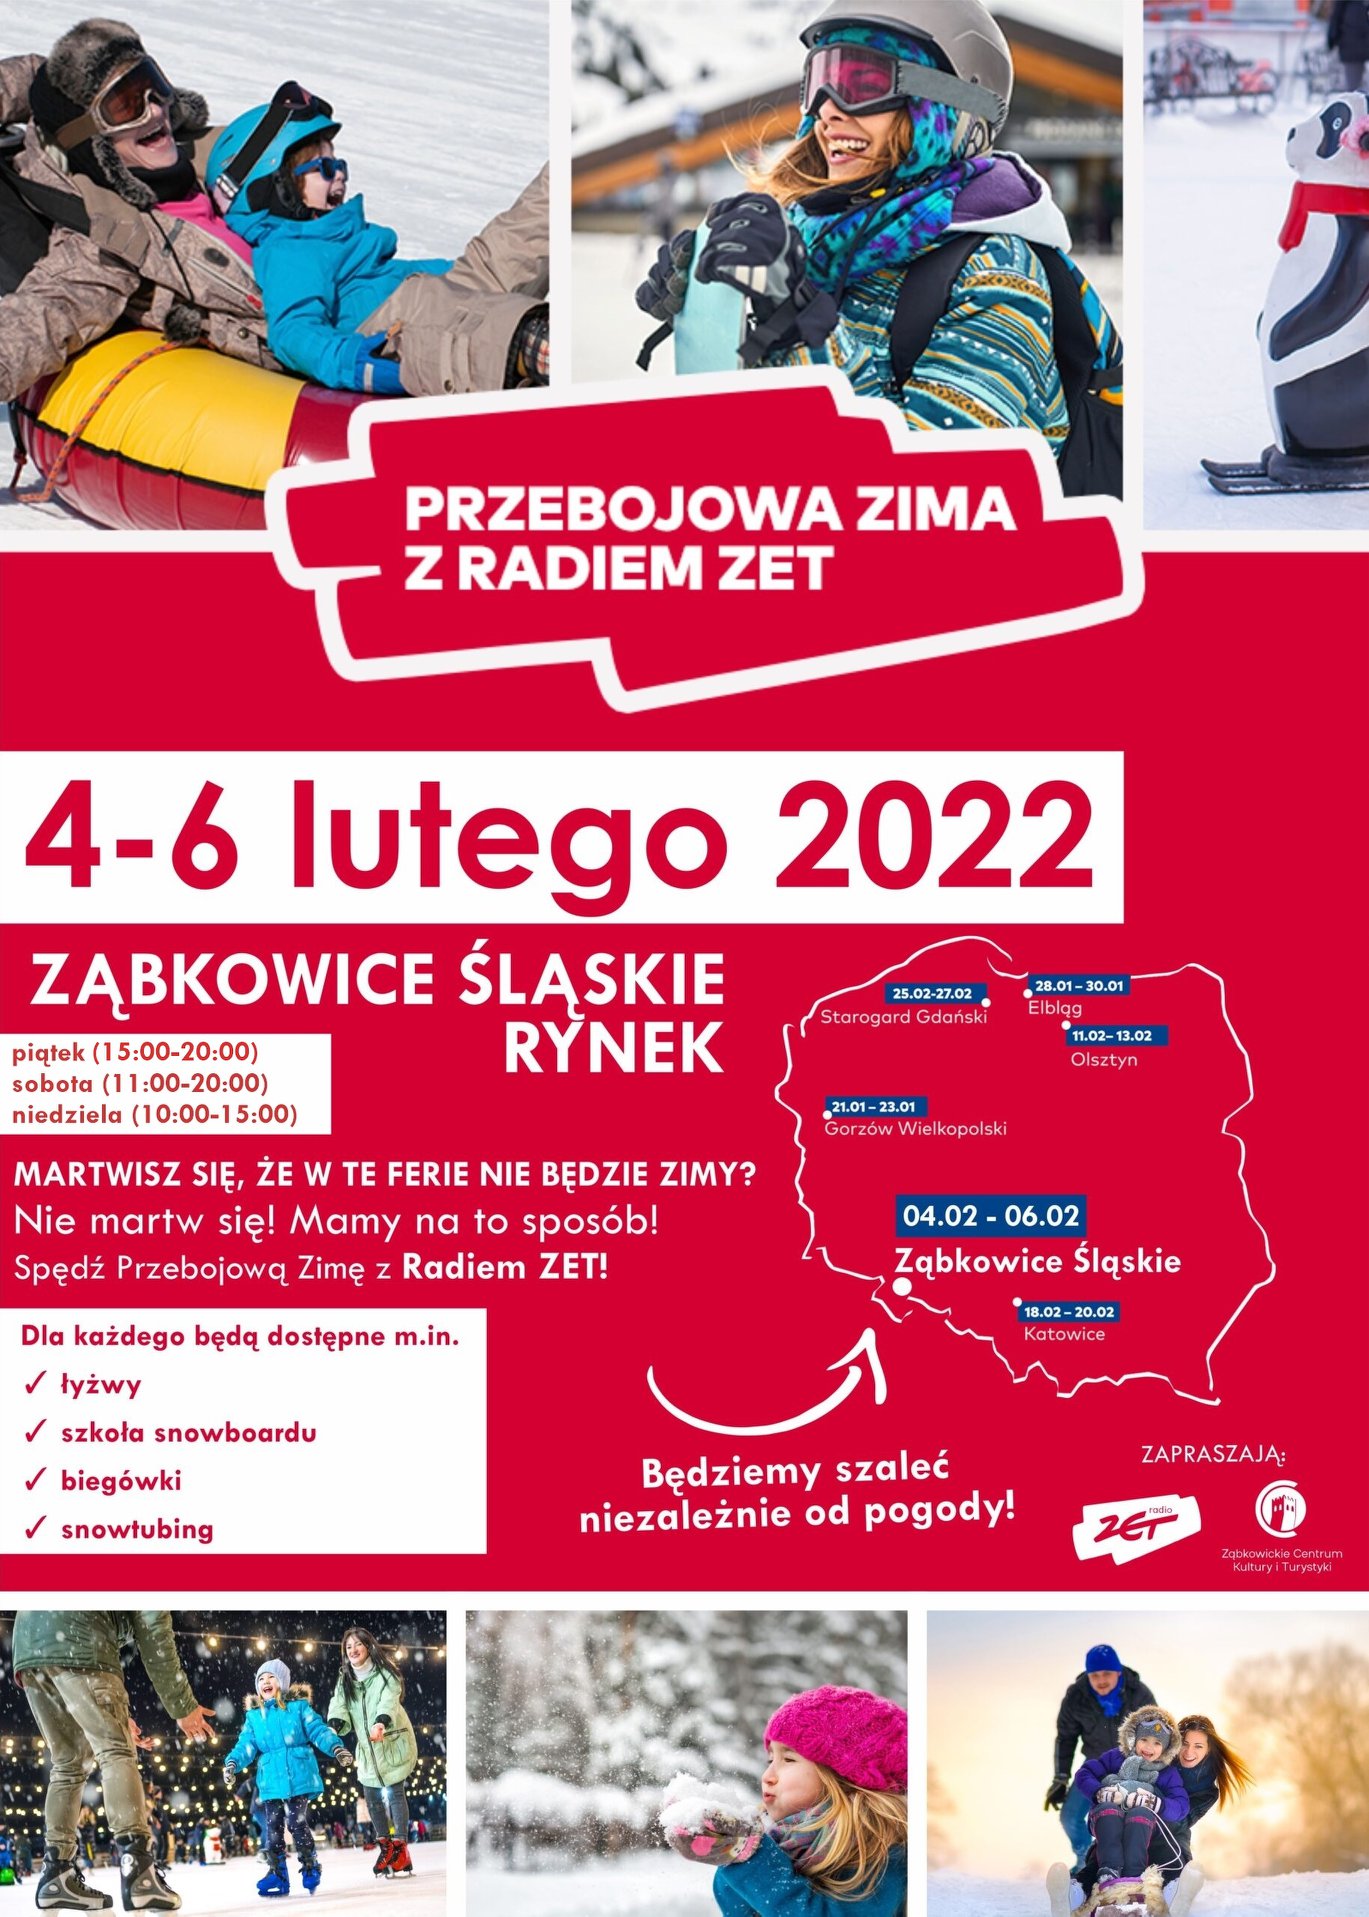 PRZEBOJOWA ZIMA Z RADIEM ZET 4-6 lutego 2022r. Ząbkowice Śląskie rynek